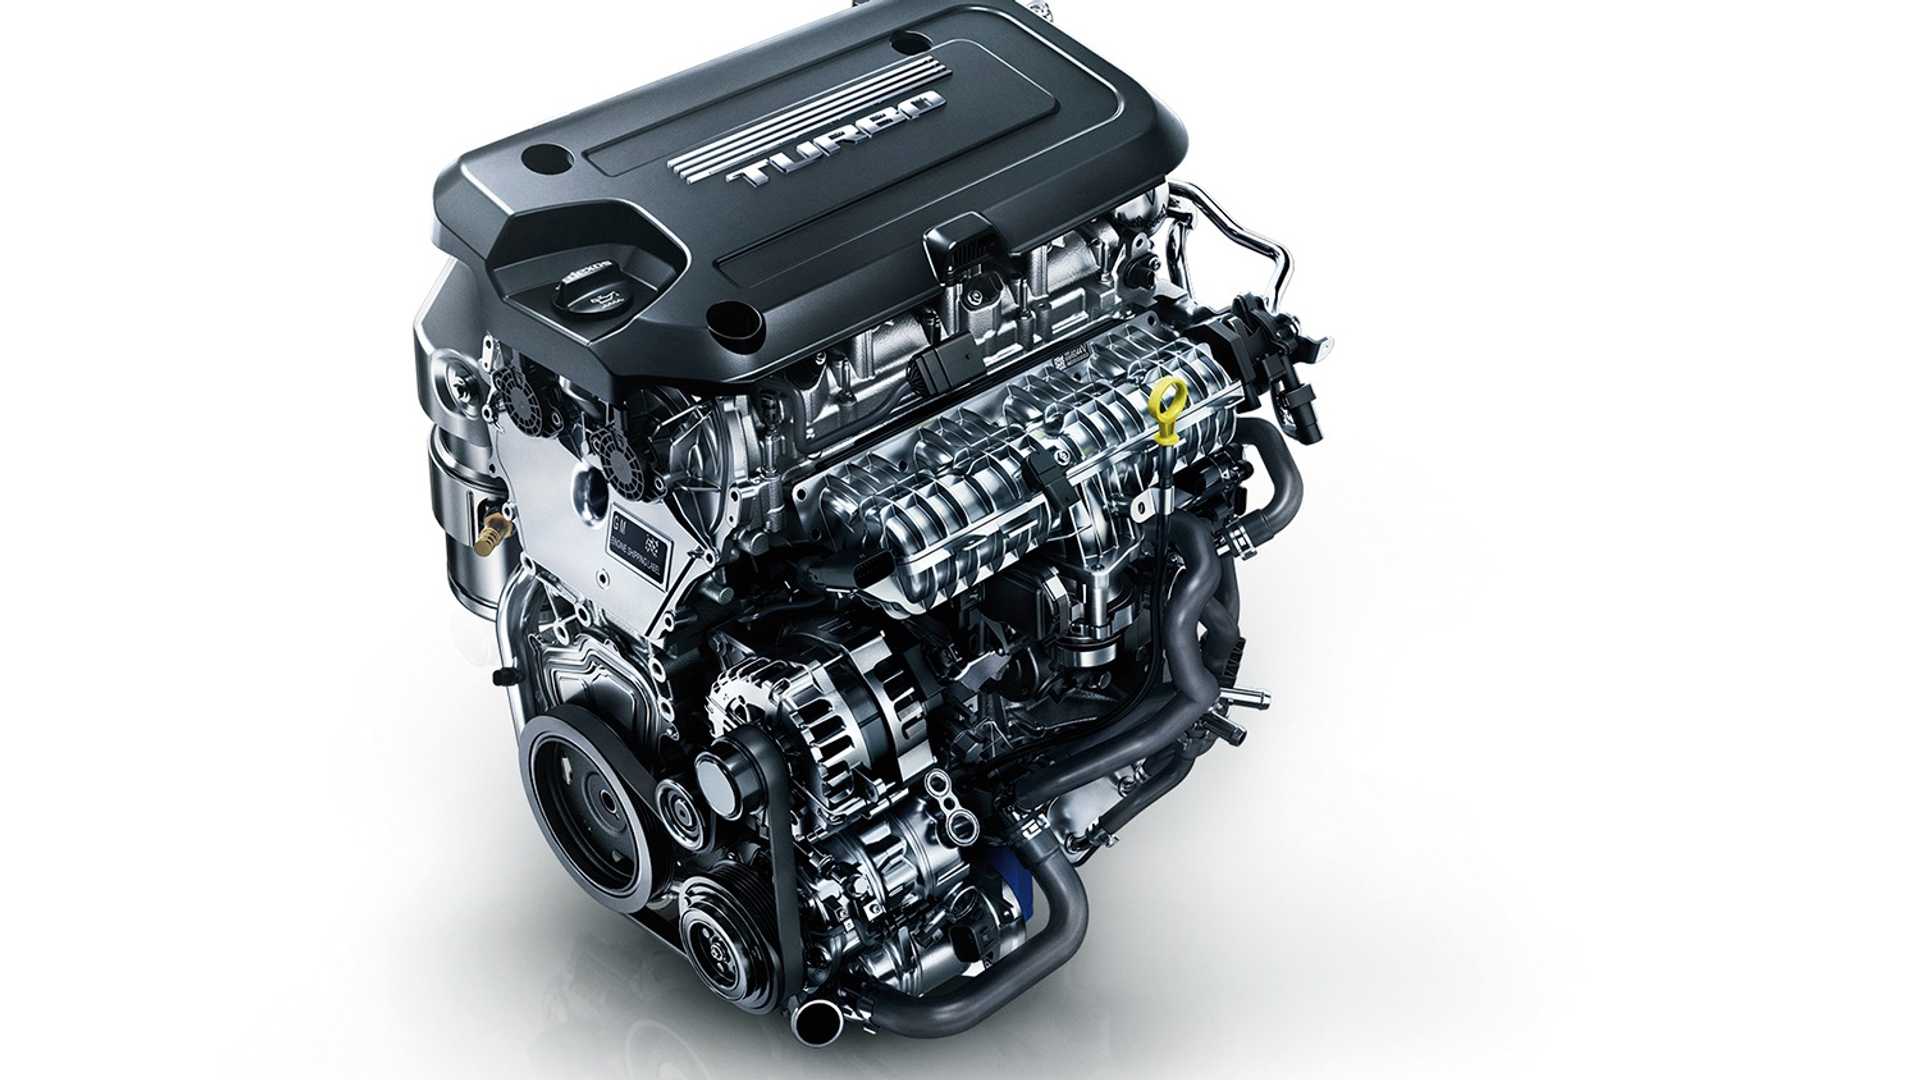 Двигатель blr/bly/bvy/bvz - характеристики, проблемы, модификации и надежность